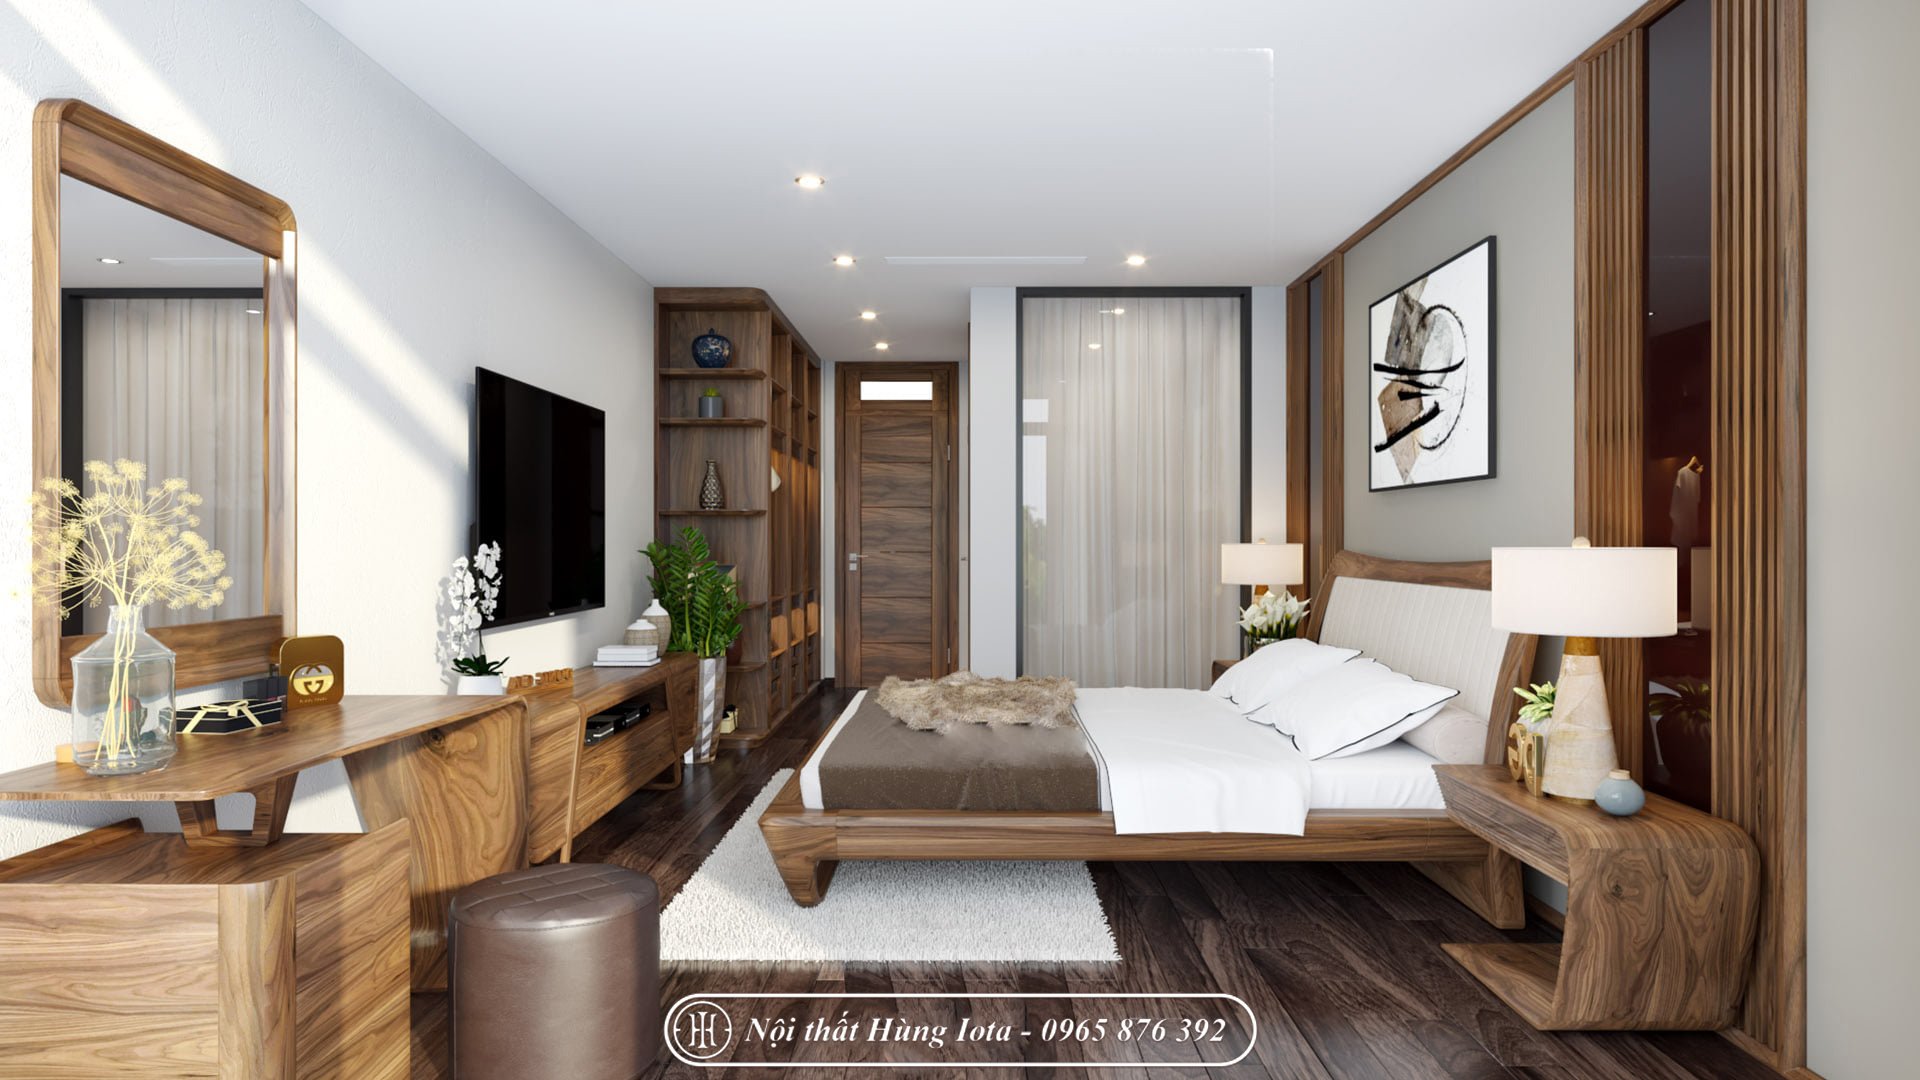 Giường gỗ óc chó tựa đệm đẹp cho phòng ngủ chung cư, biệt thự